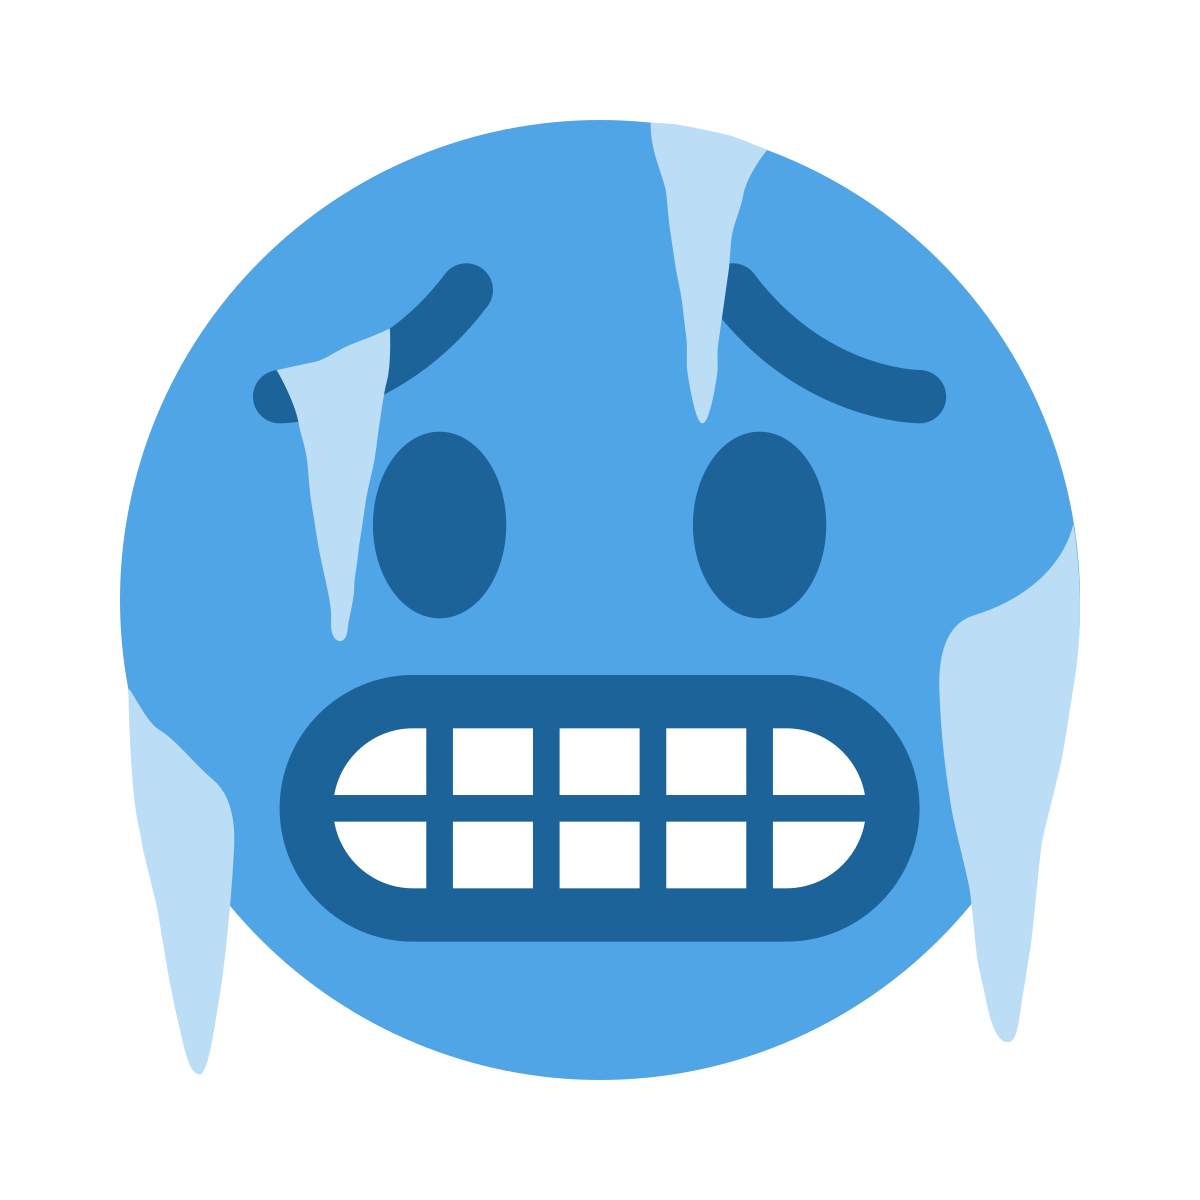 Cold Emoji PNG Images Transparent Free Download | PNGMart